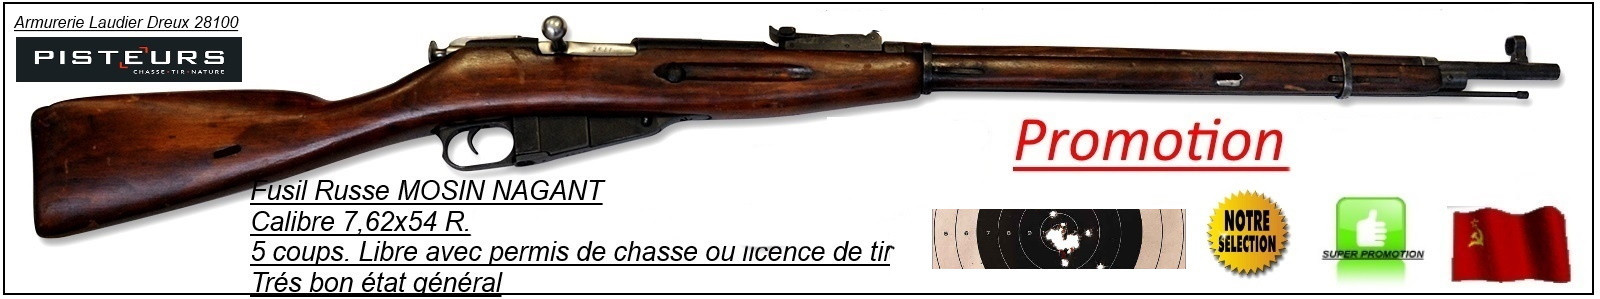 Fusil MOSIN NAGANT Calibre 7,62 x 54 R modèle 1891/30-Russe D'époque- répétition 5 coups -Trés trés bel état général- -Promotion-Ref 24309